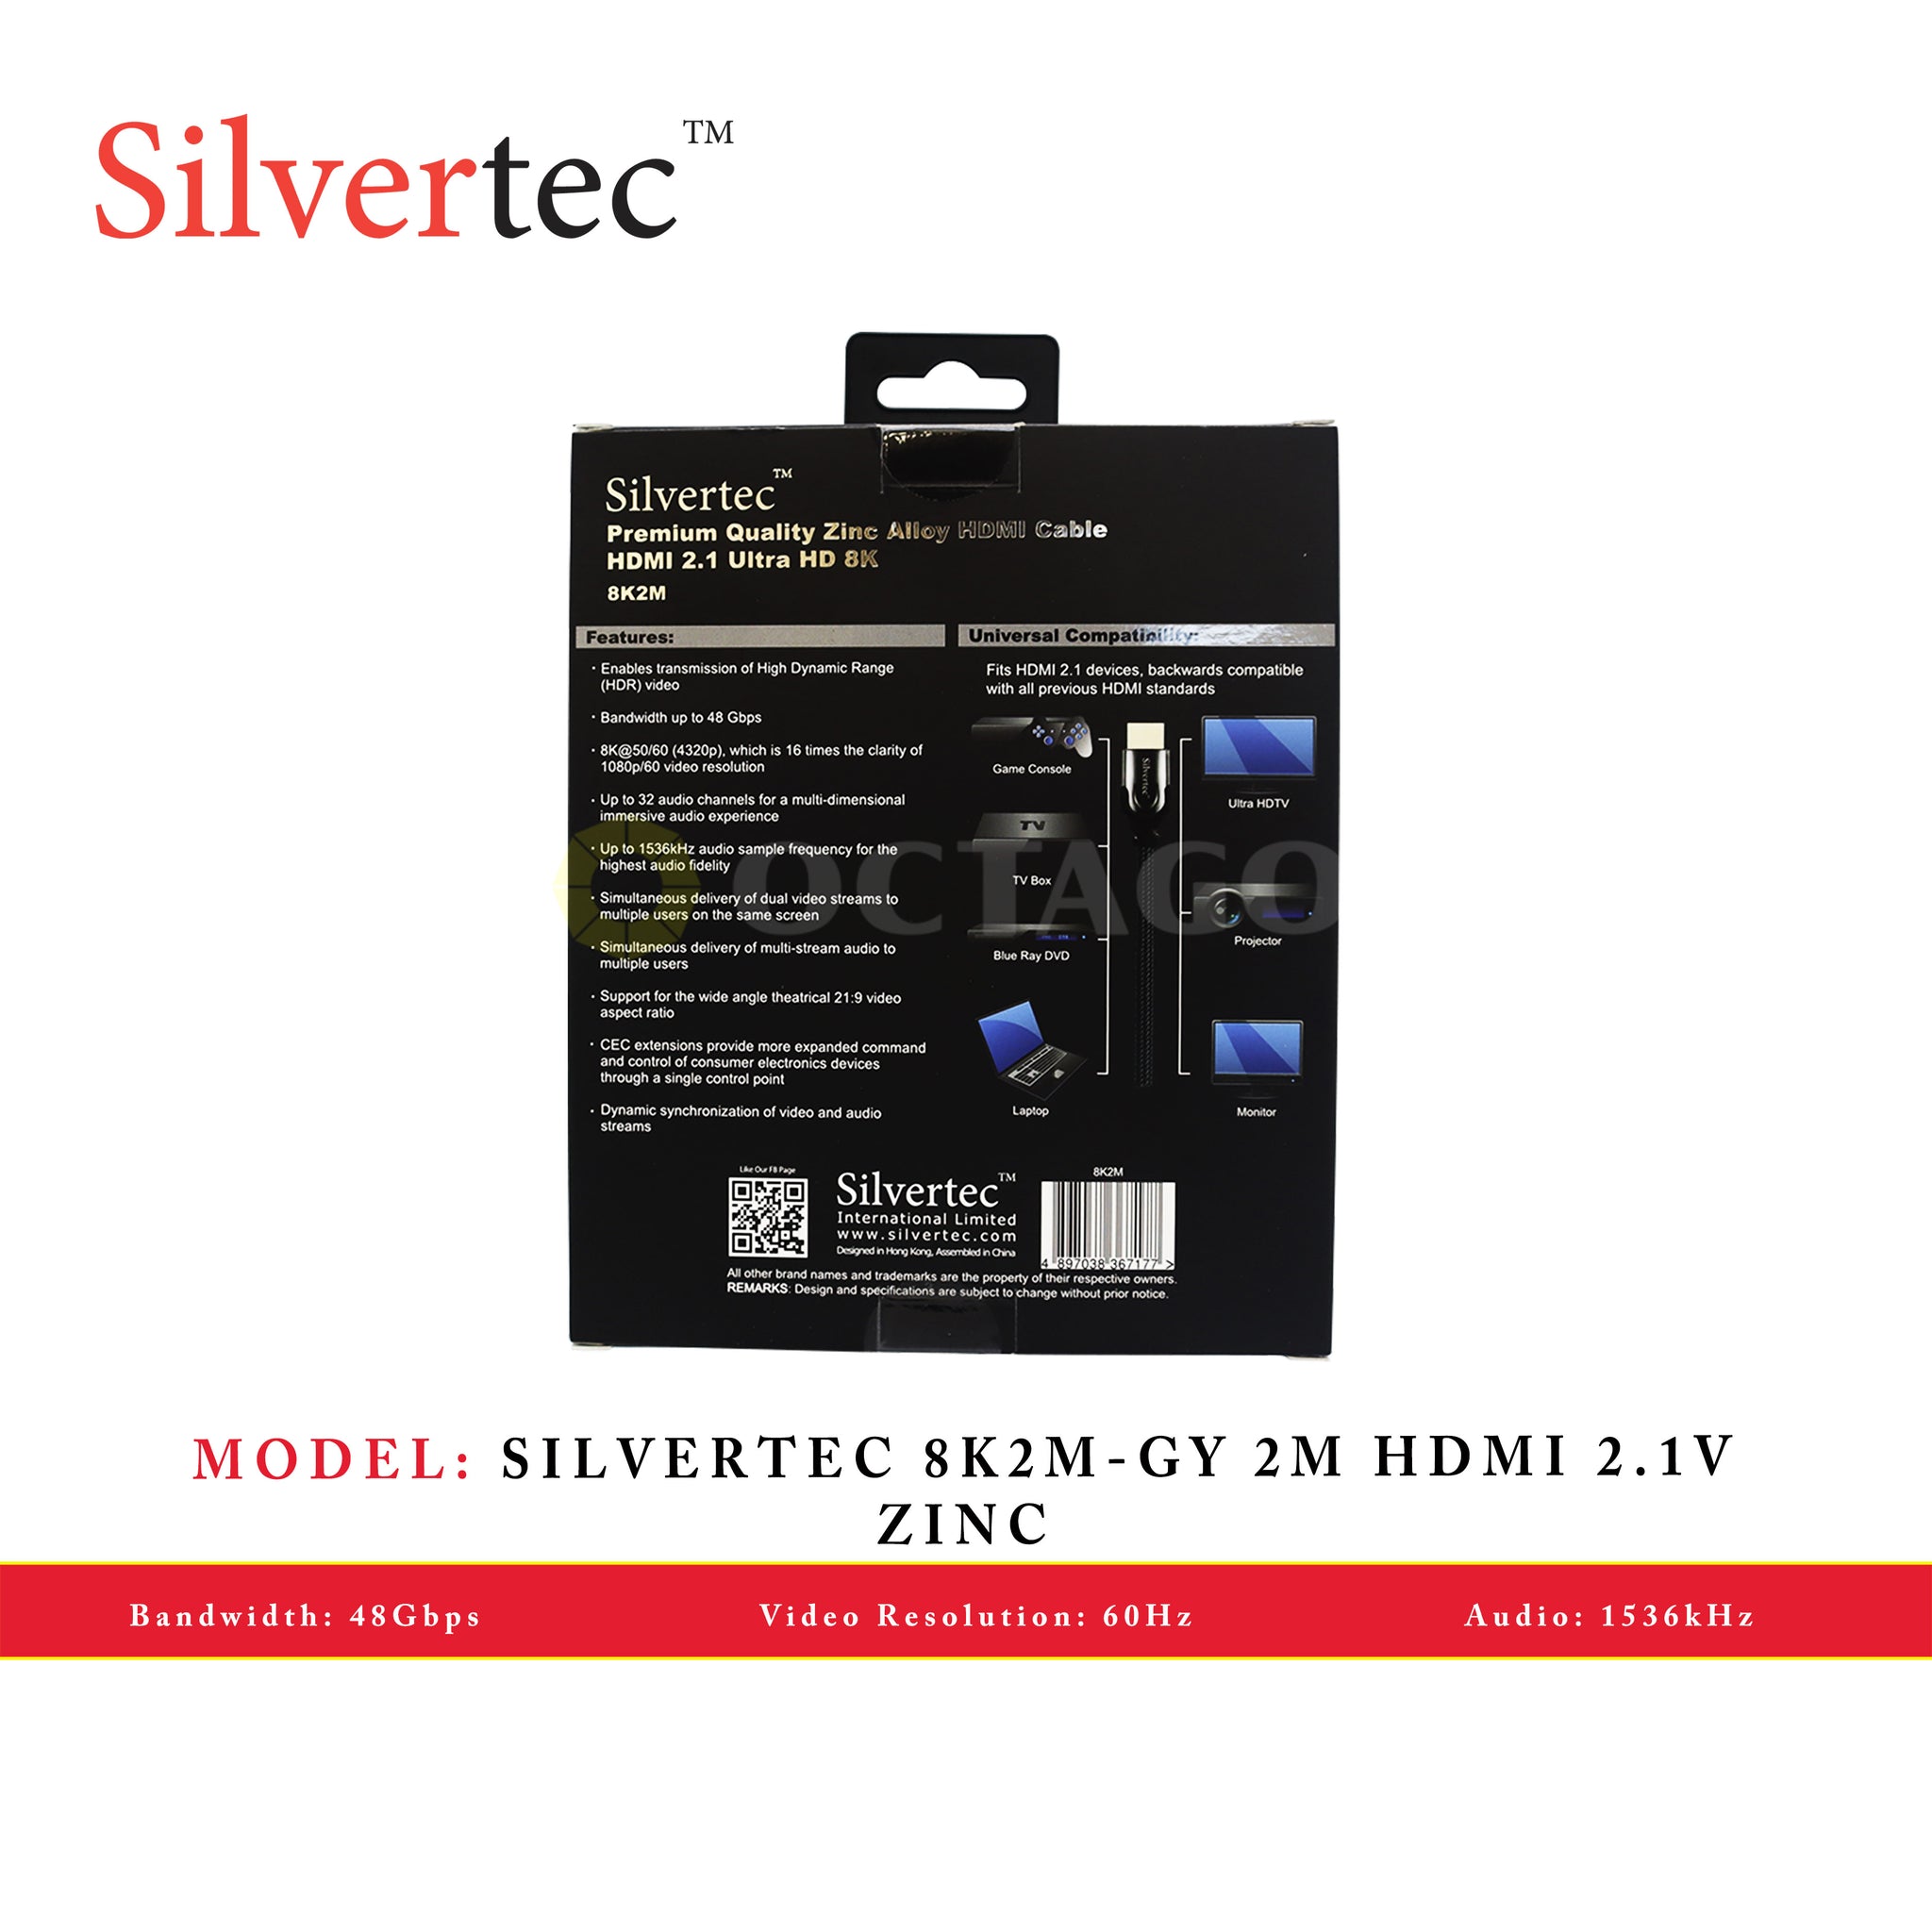 SILVERTEC 8K2M-GY 2M HDMI 2.1V ZINC